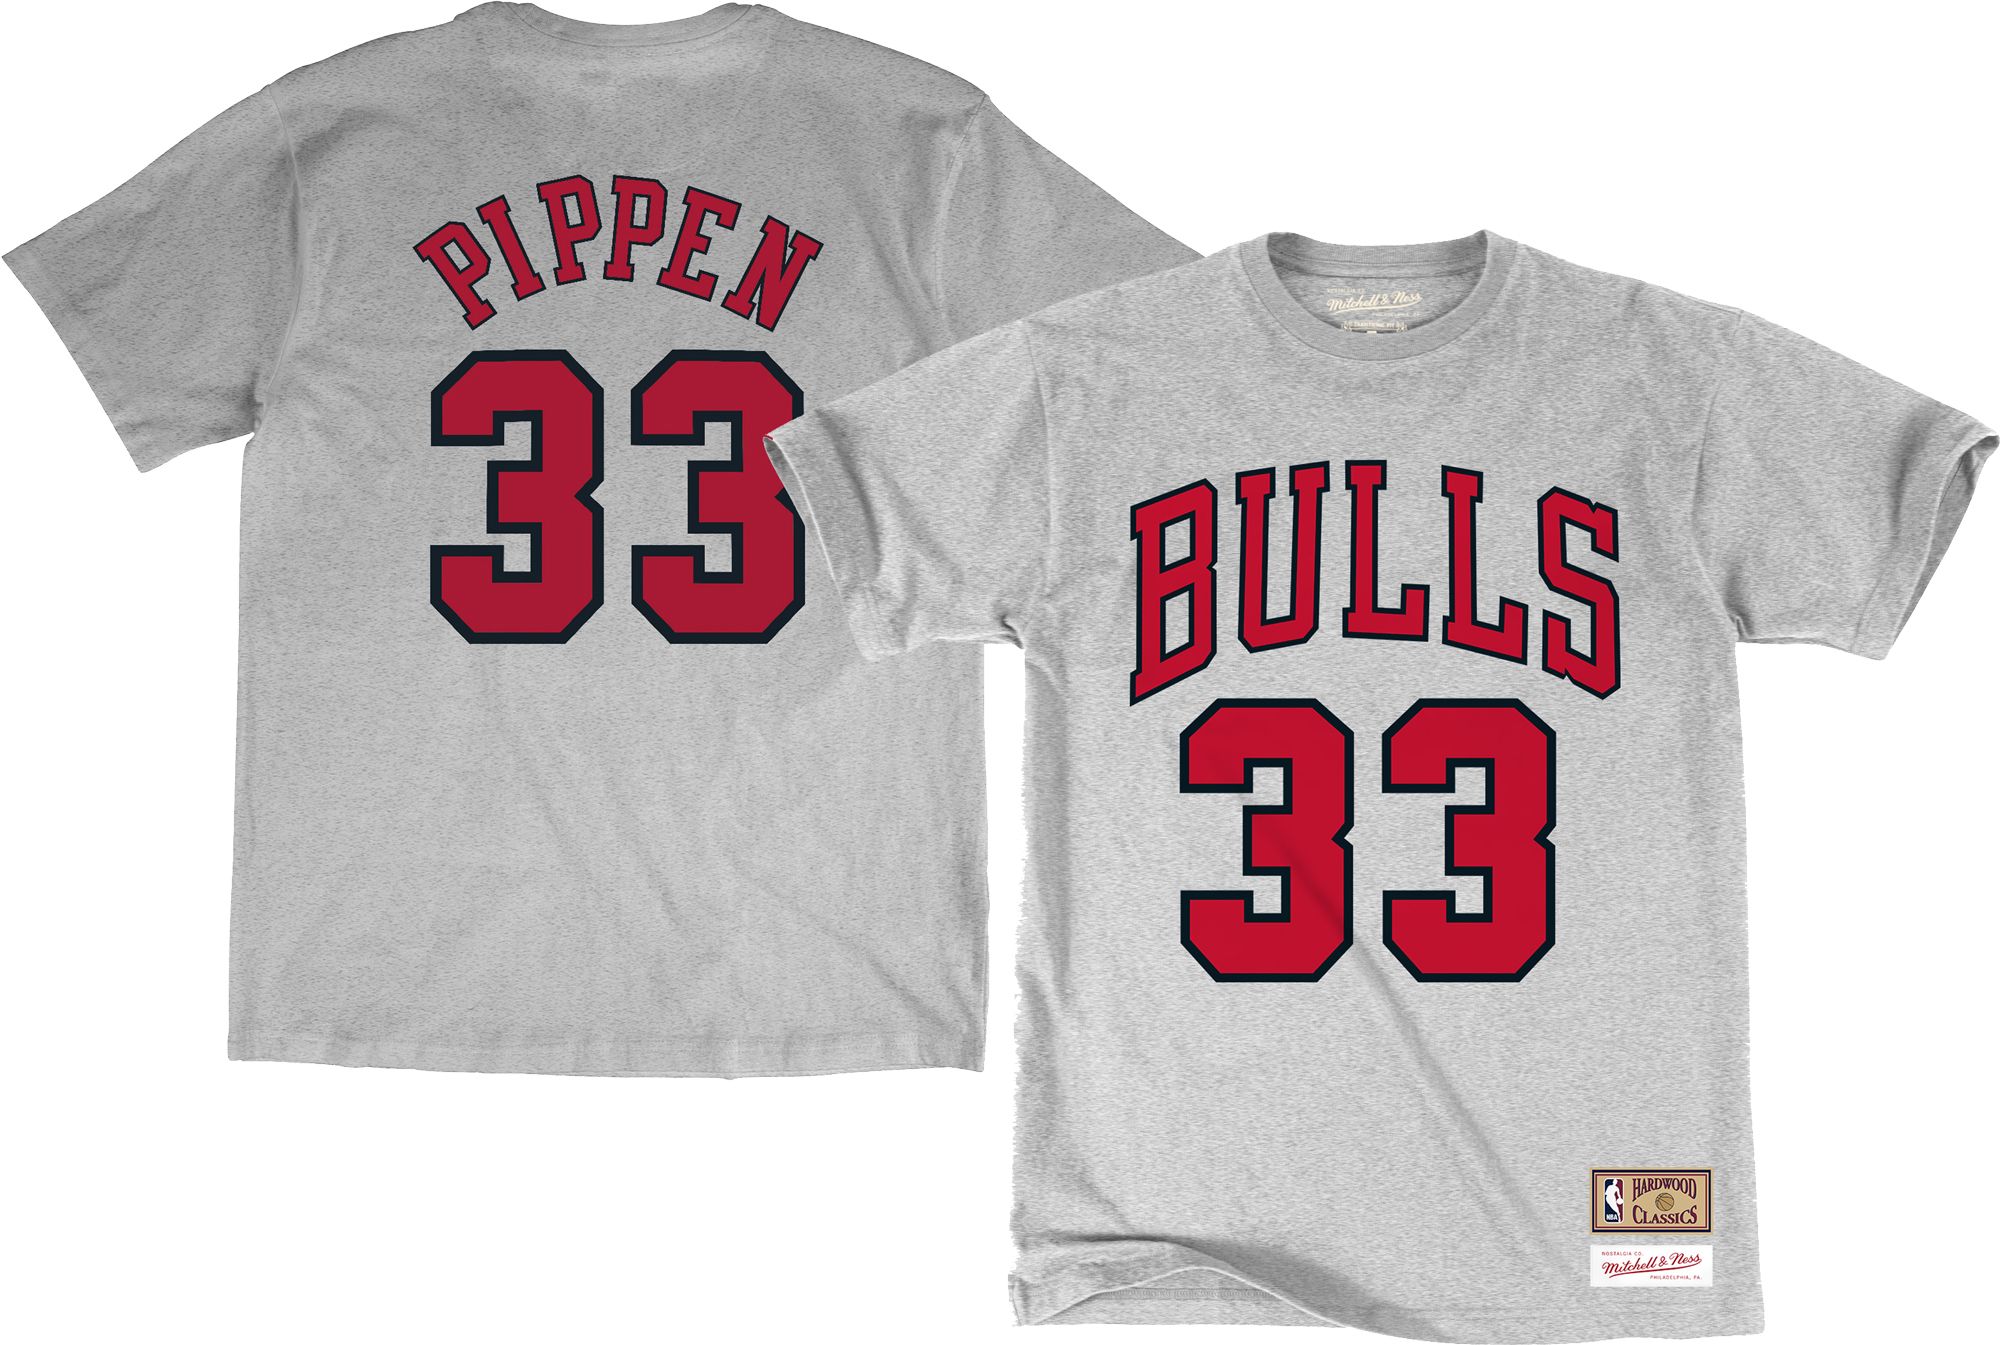 pippen shirt bulls